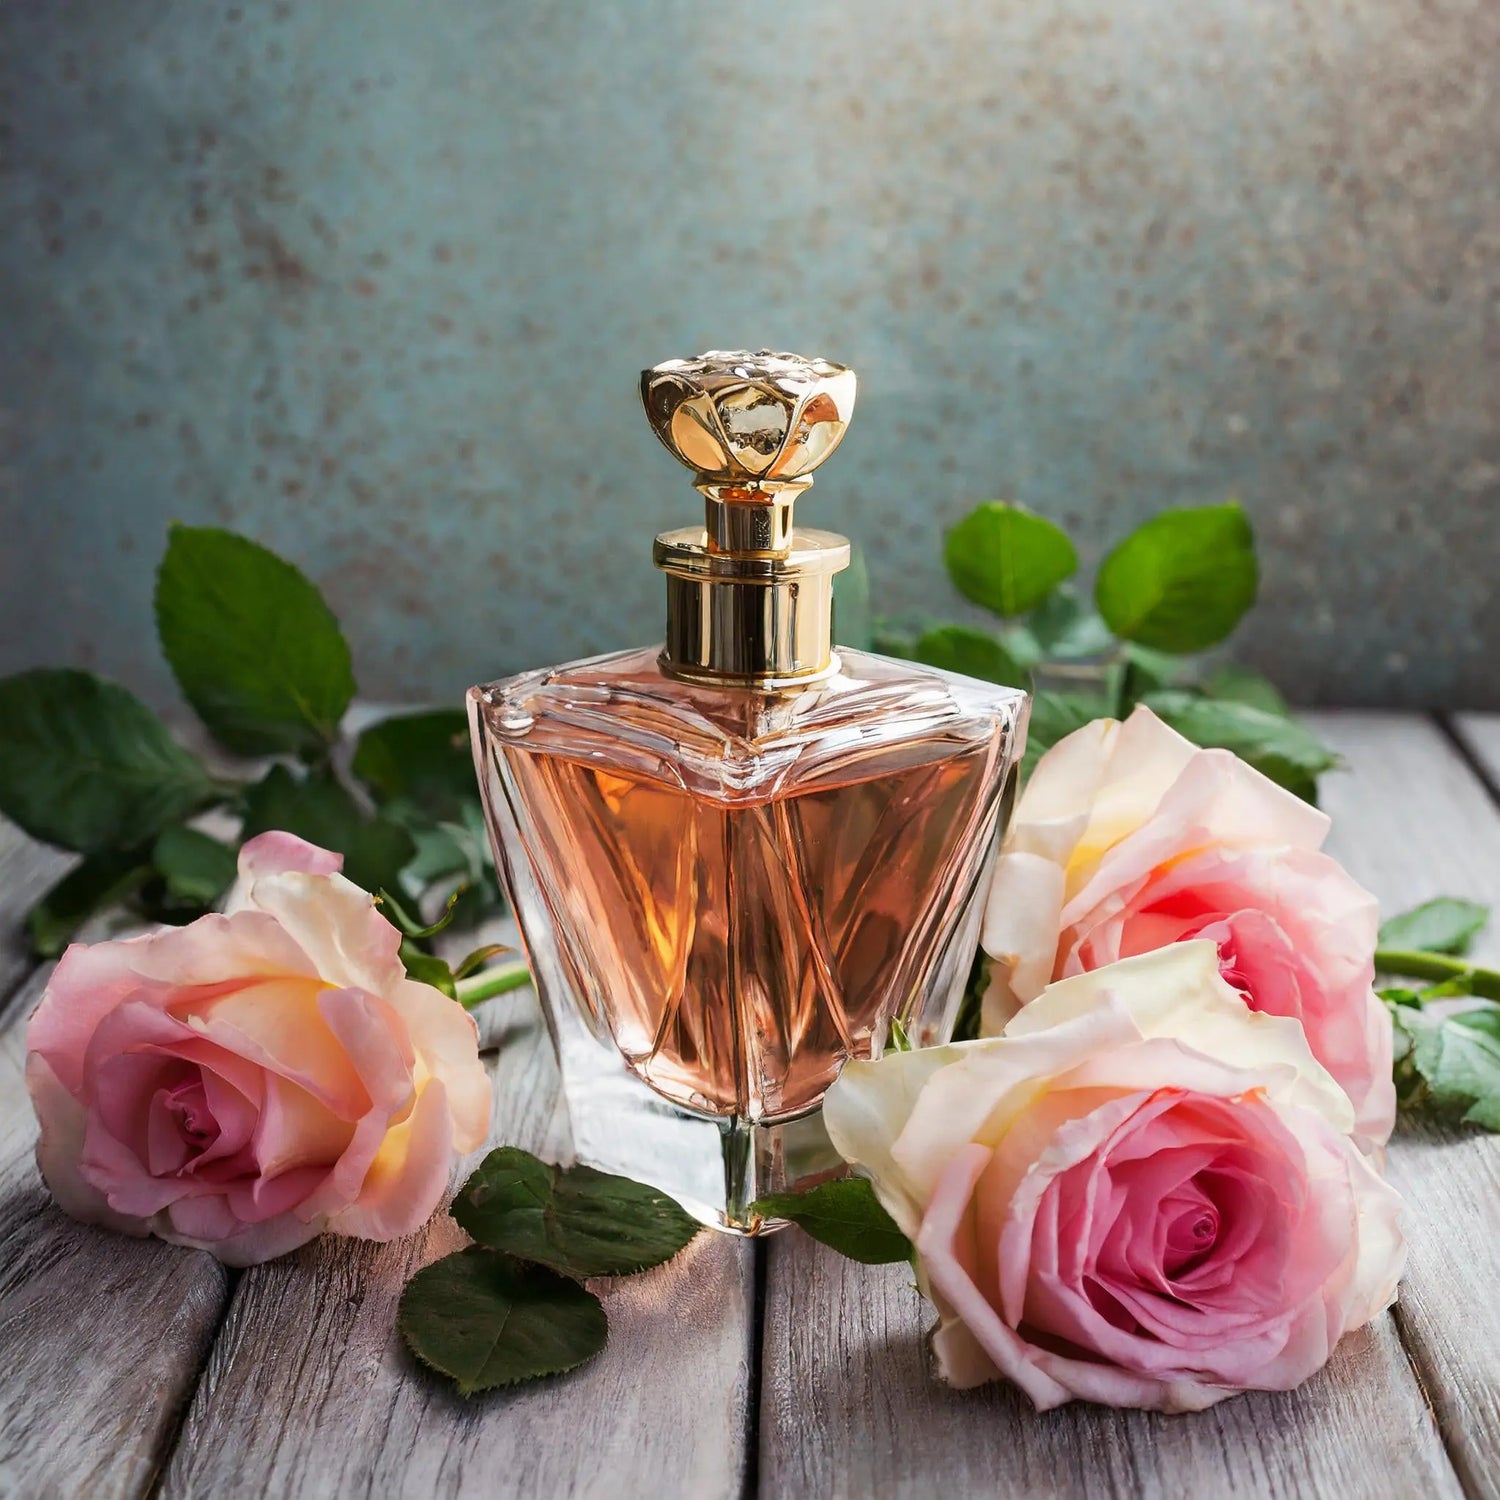 Rose-Parfum Hani Perfumesduftzwillinge parfum dupe zwilling duftzwilling